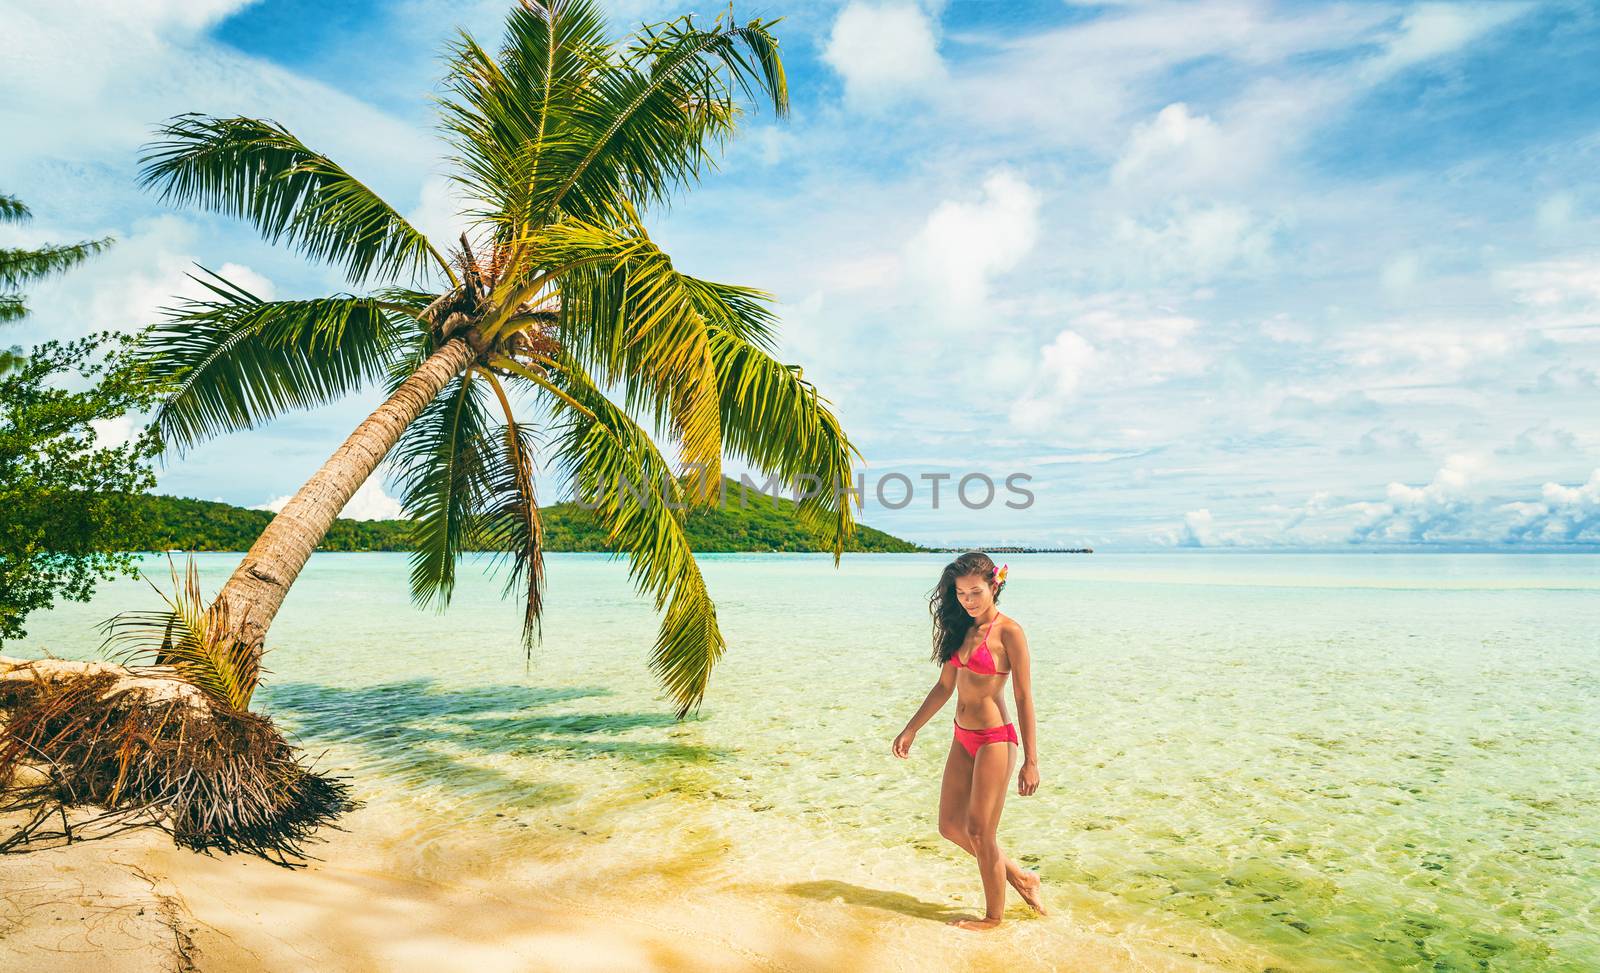 Luxury beach vacation Tahiti Bora Bora bikini woman swimming in paradise getaway destination. Beautiful Asian swimsuit model relaxing .